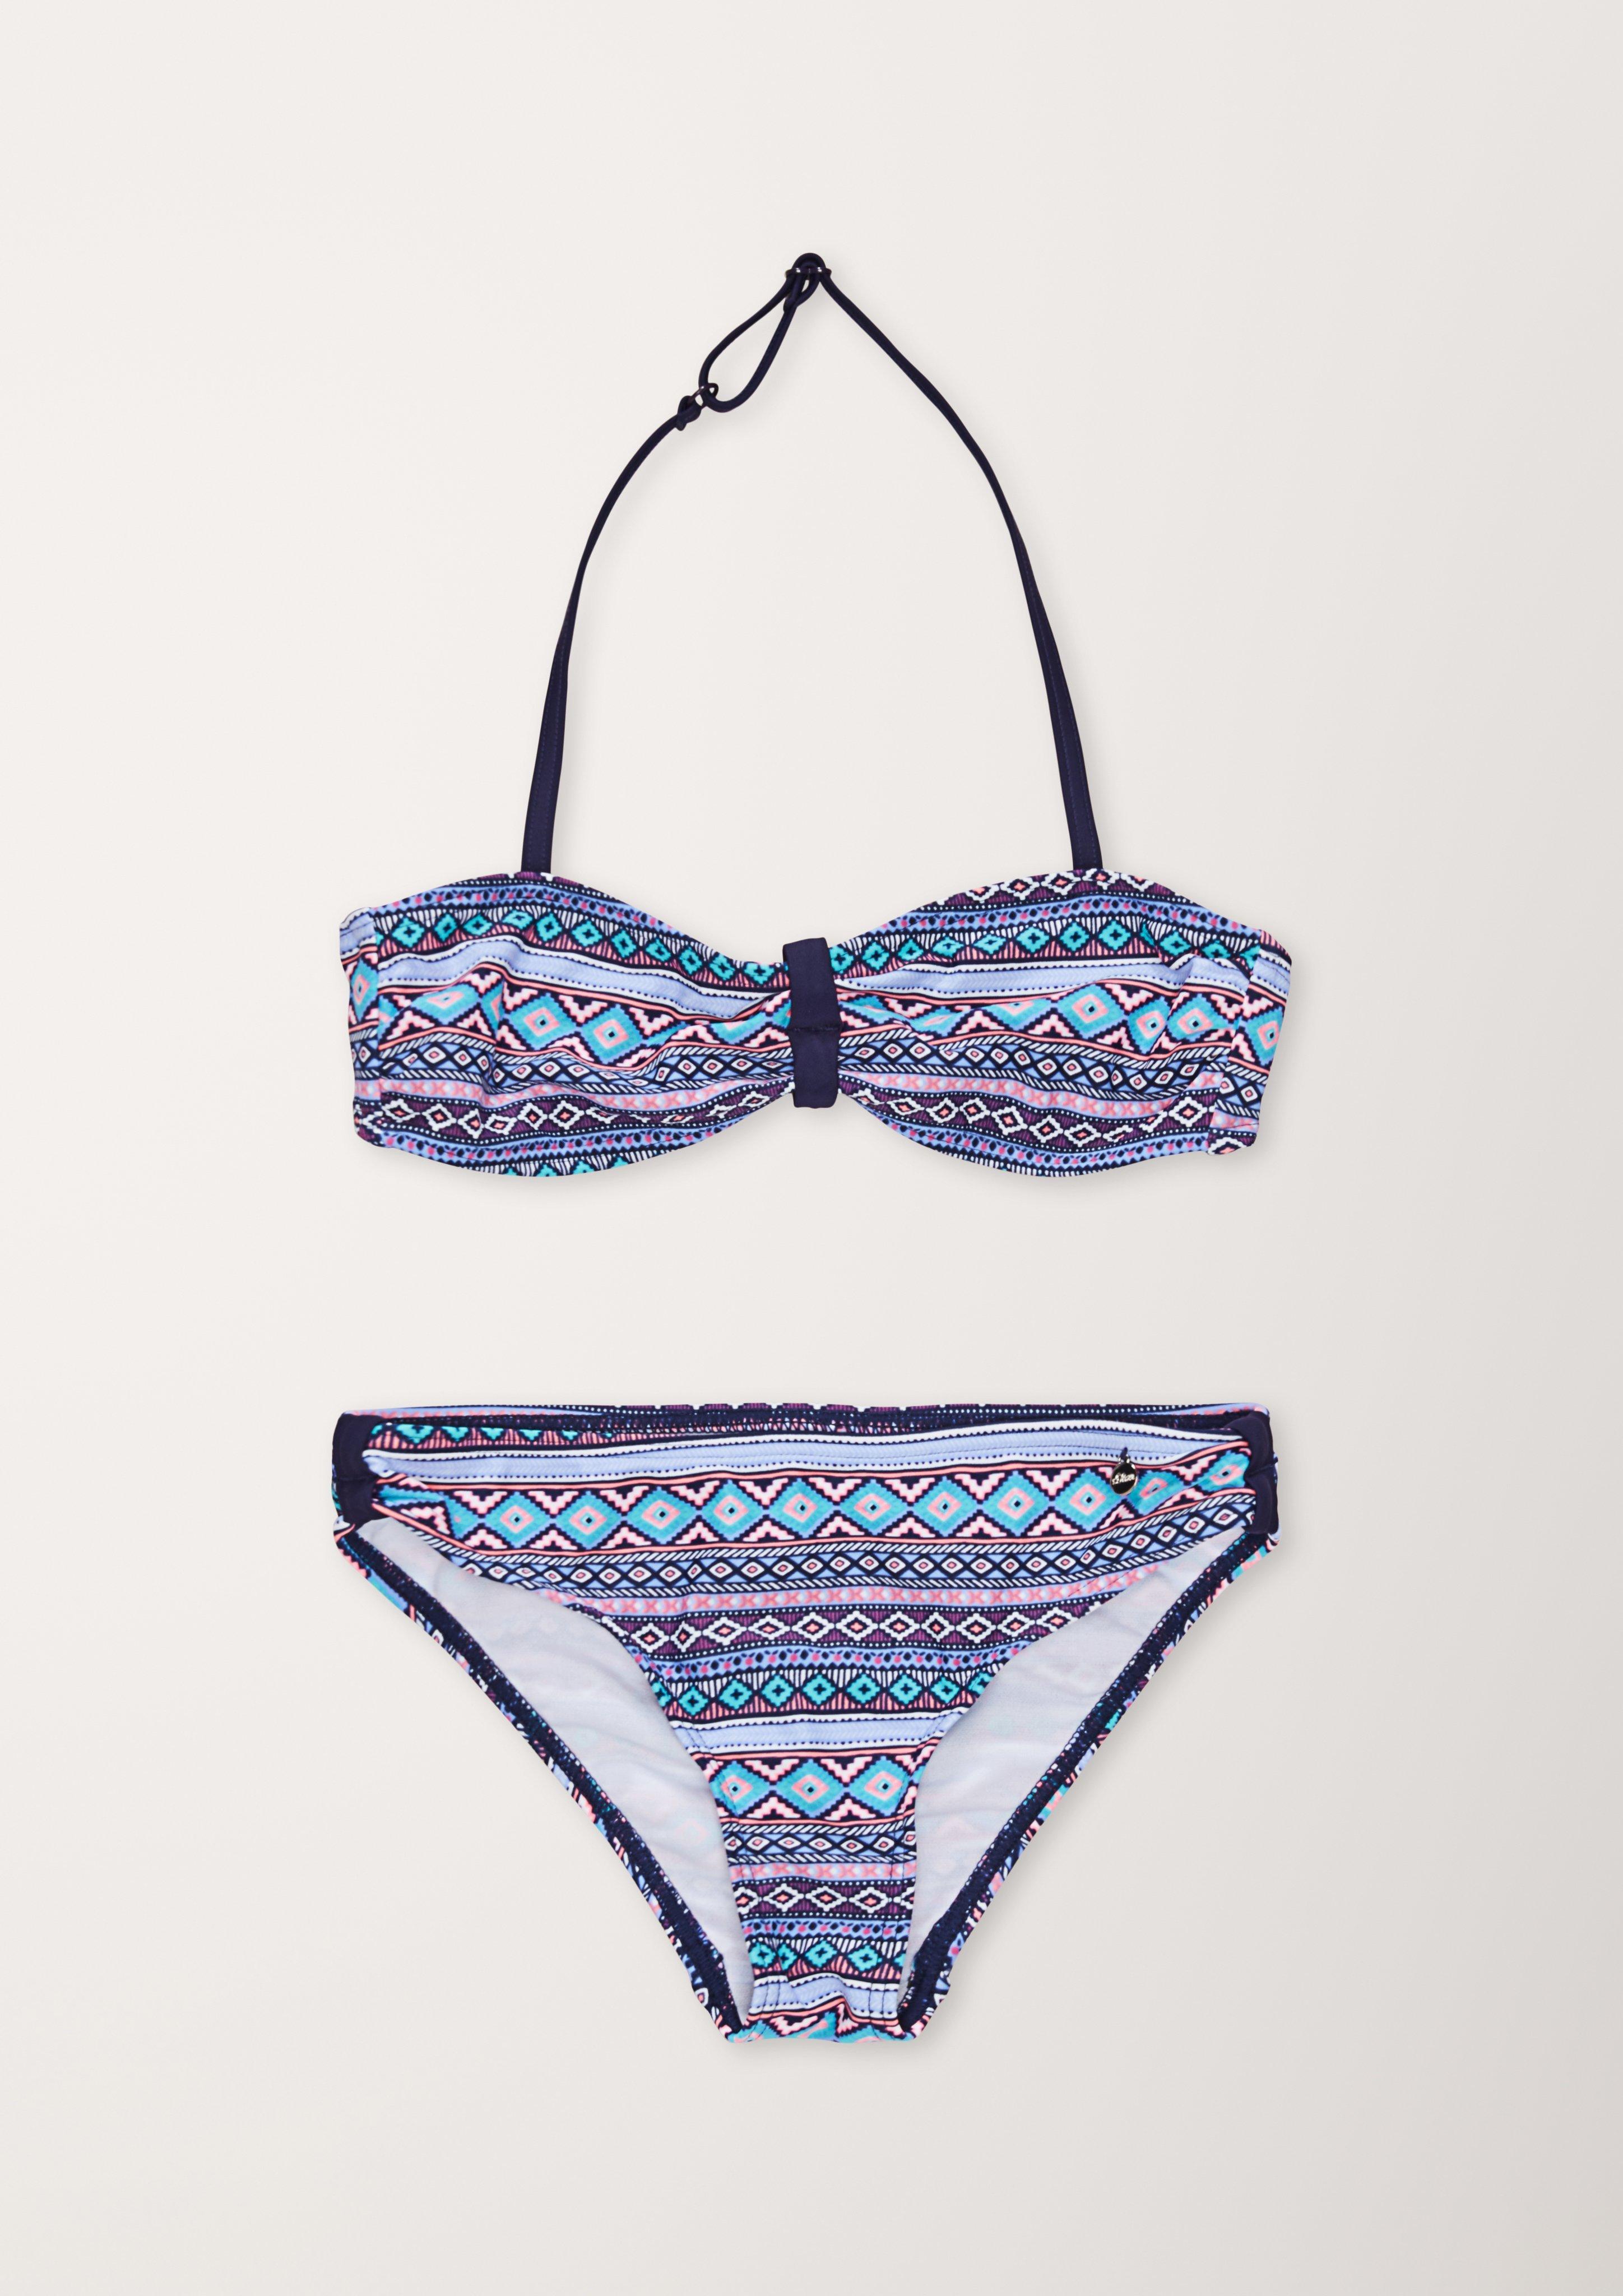 Bandeau-Bikini mit Ethno-Muster - ozeanblau